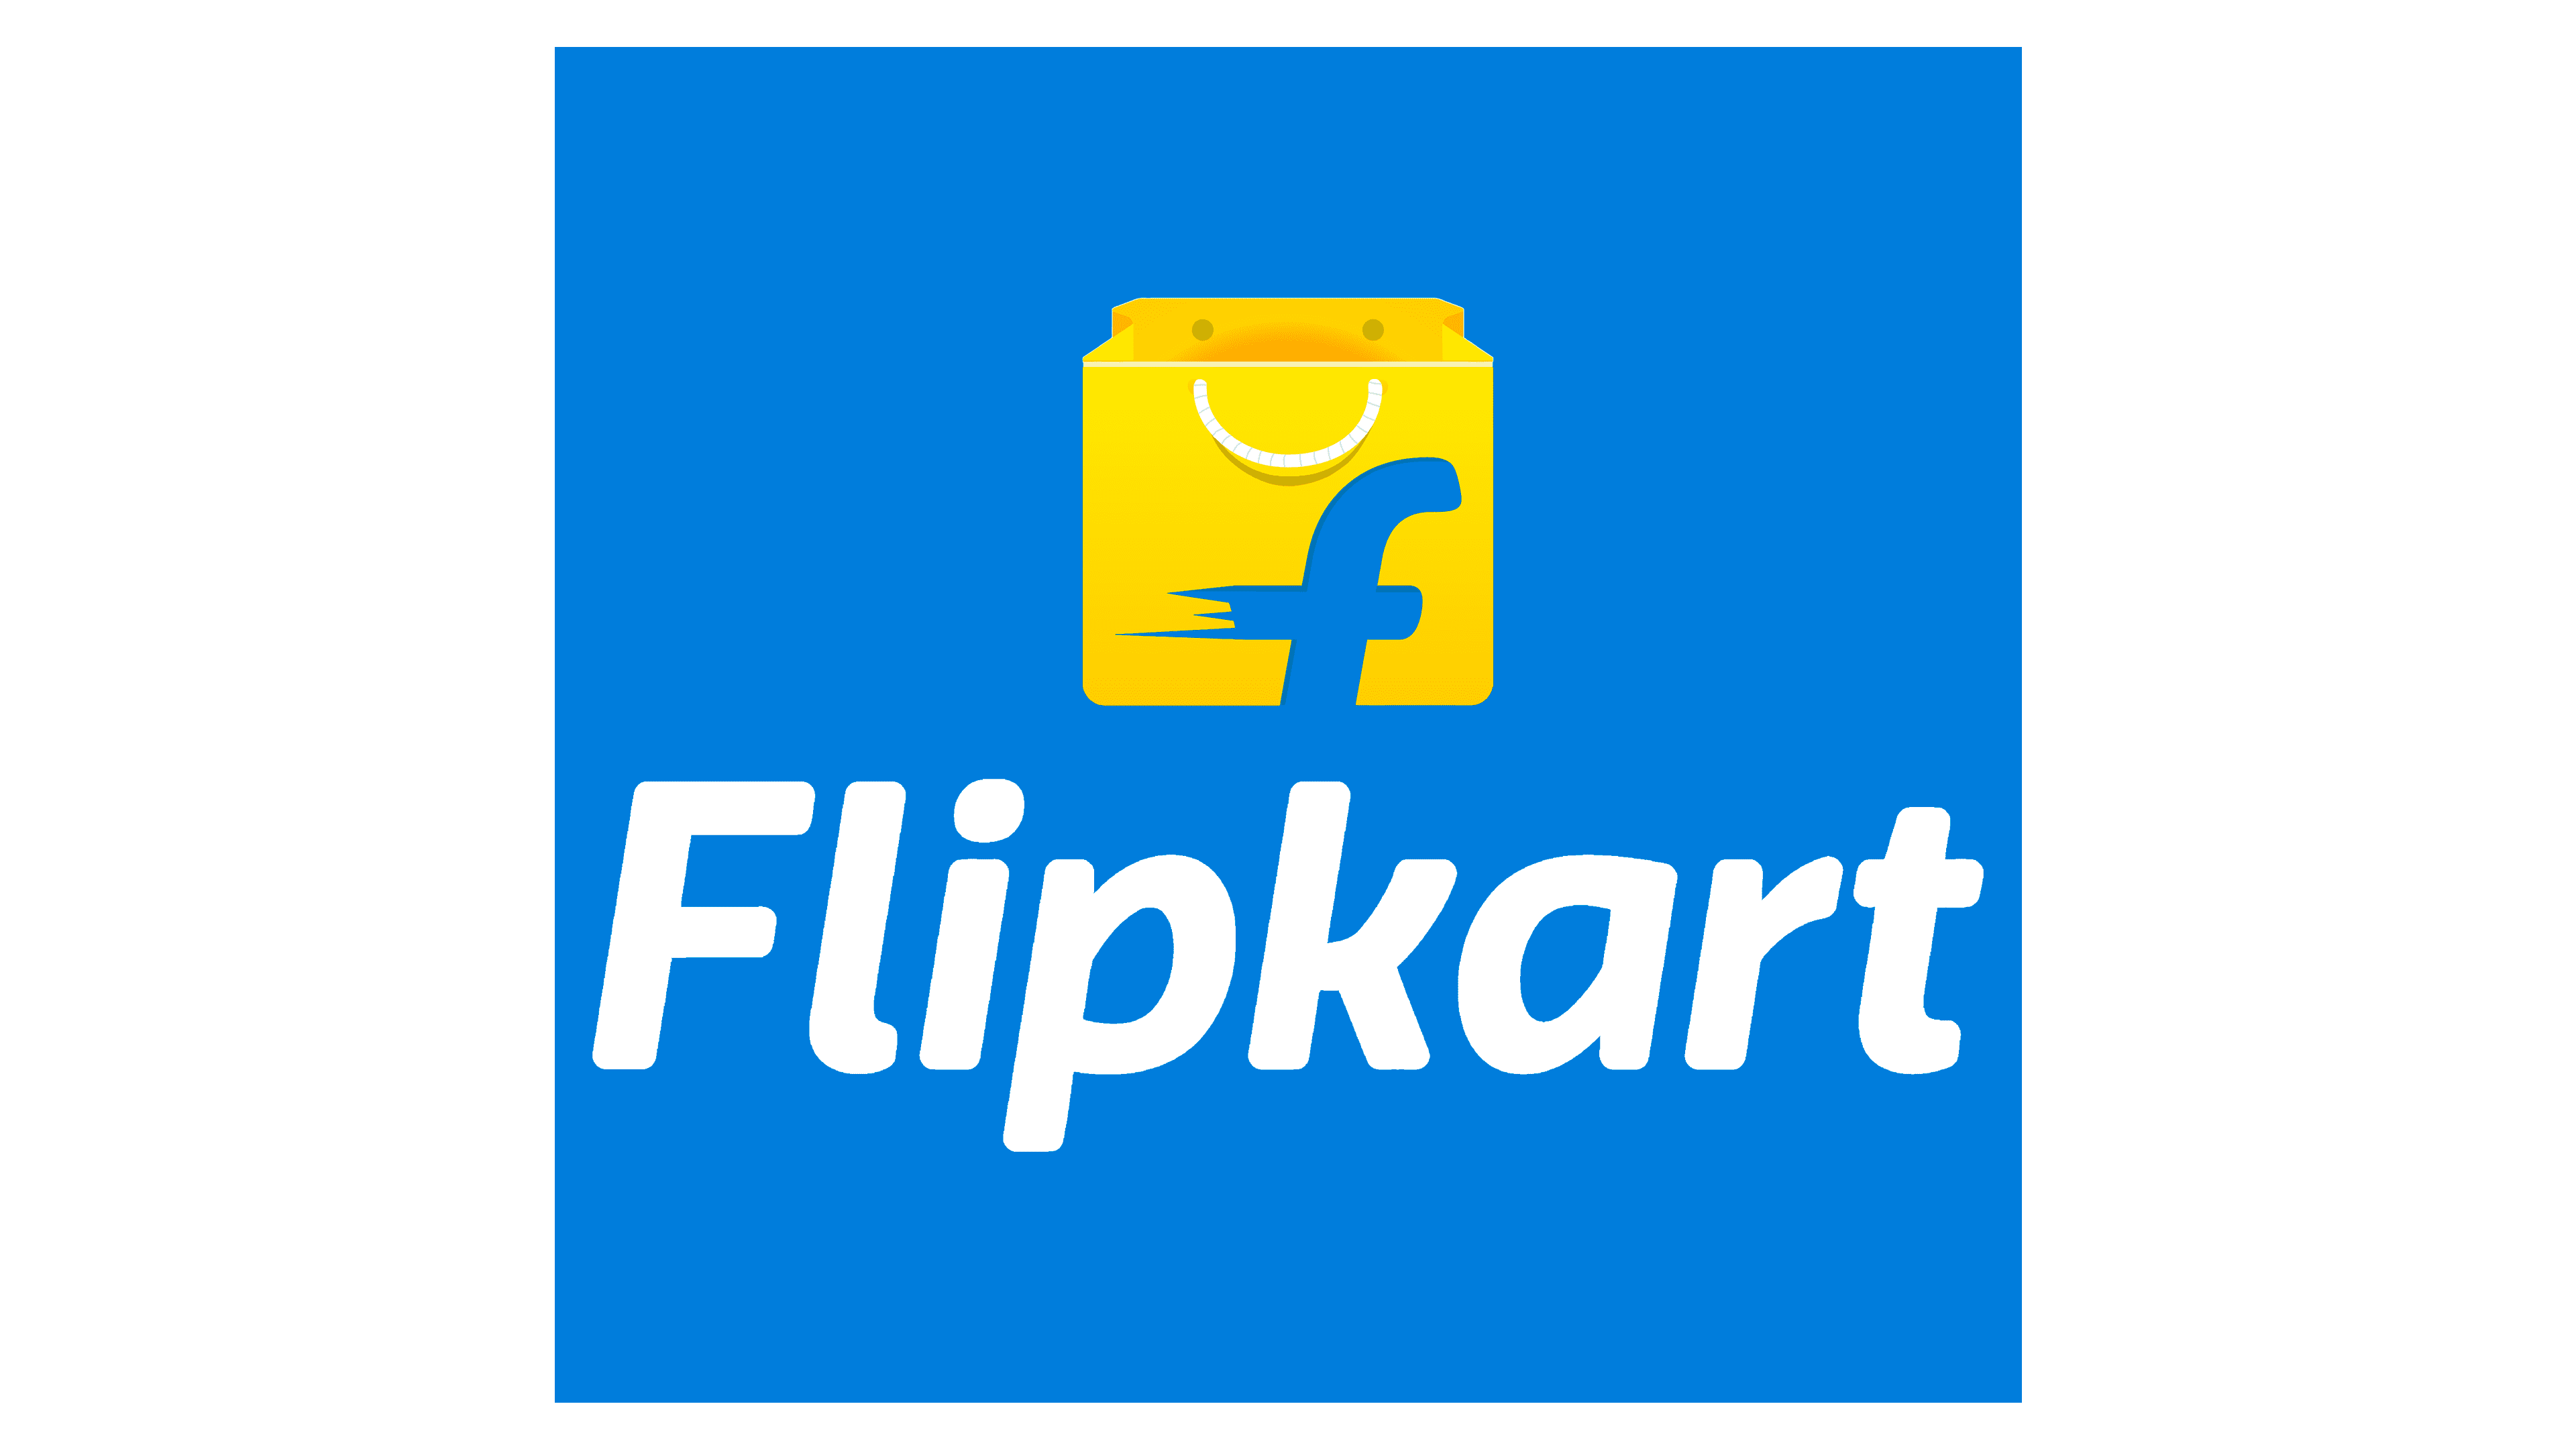 What does Flipkart logo mean? - Quora